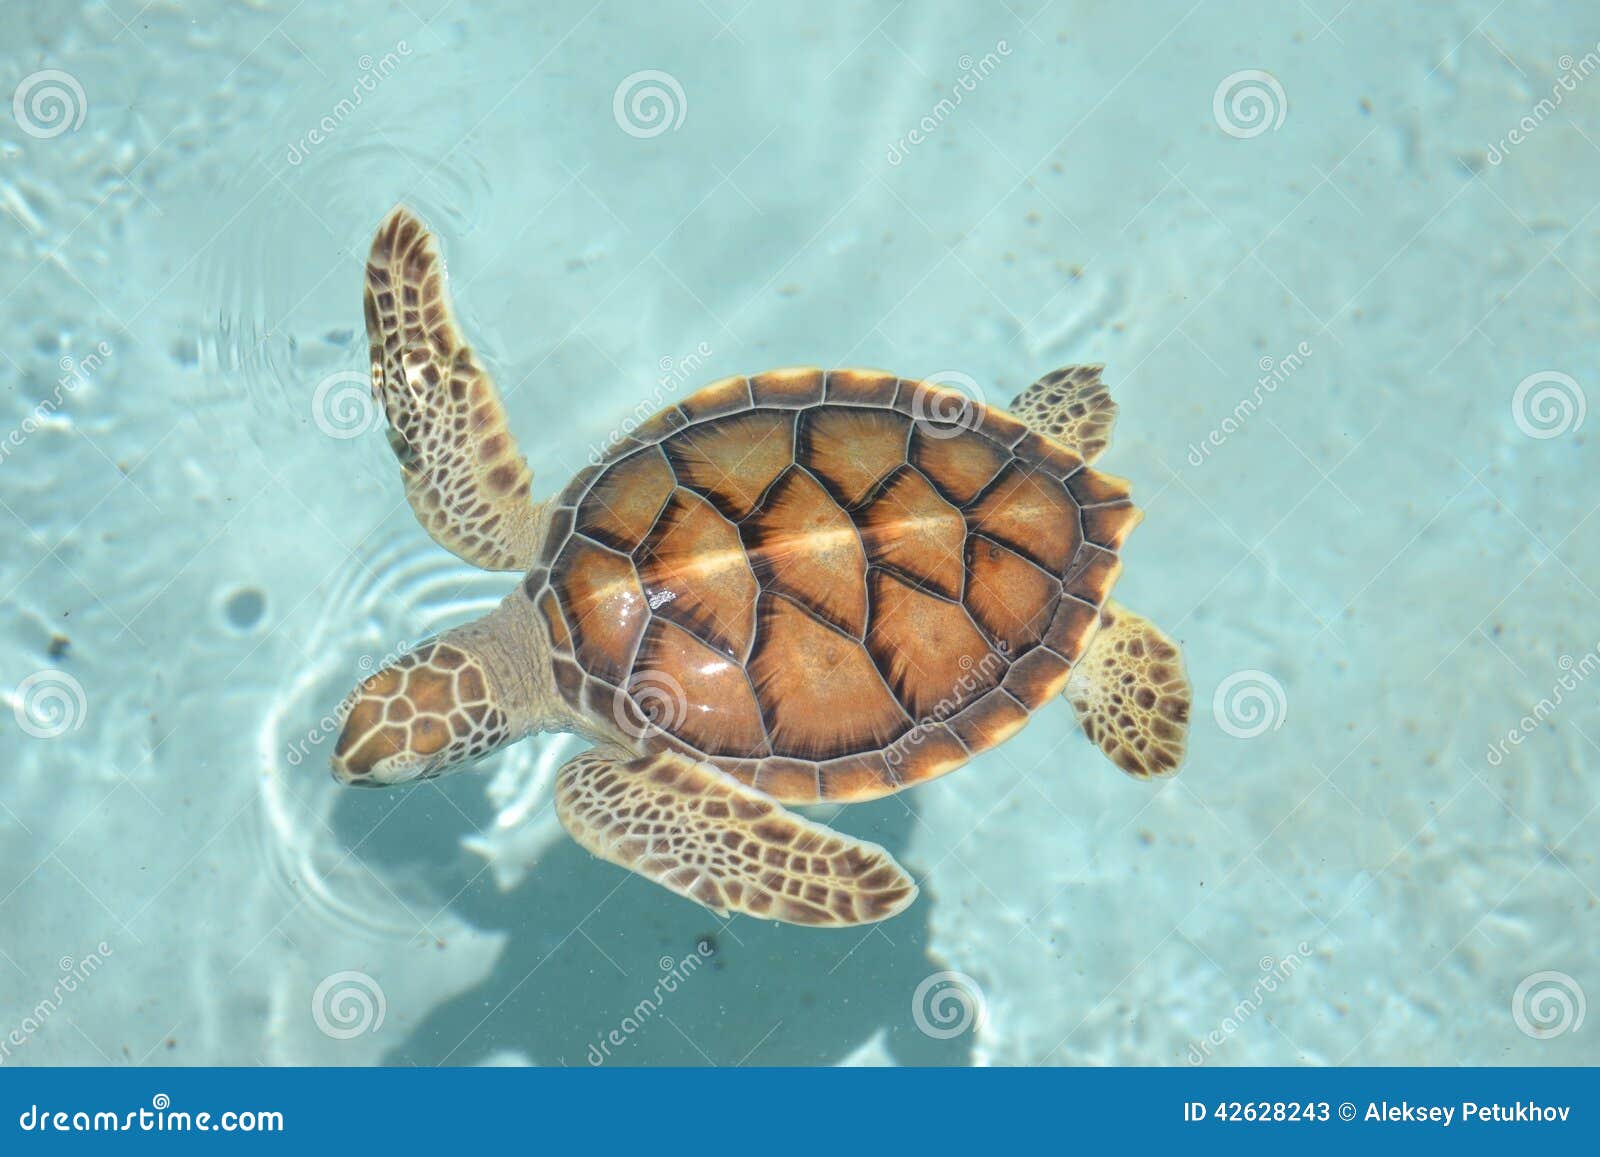 dubbel te rechtvaardigen Zich afvragen Marinelifemammals Van Het Levensreptielen Van Schildpadschildpadden Stock  Afbeelding - Image of schildpad, reptielen: 42628243